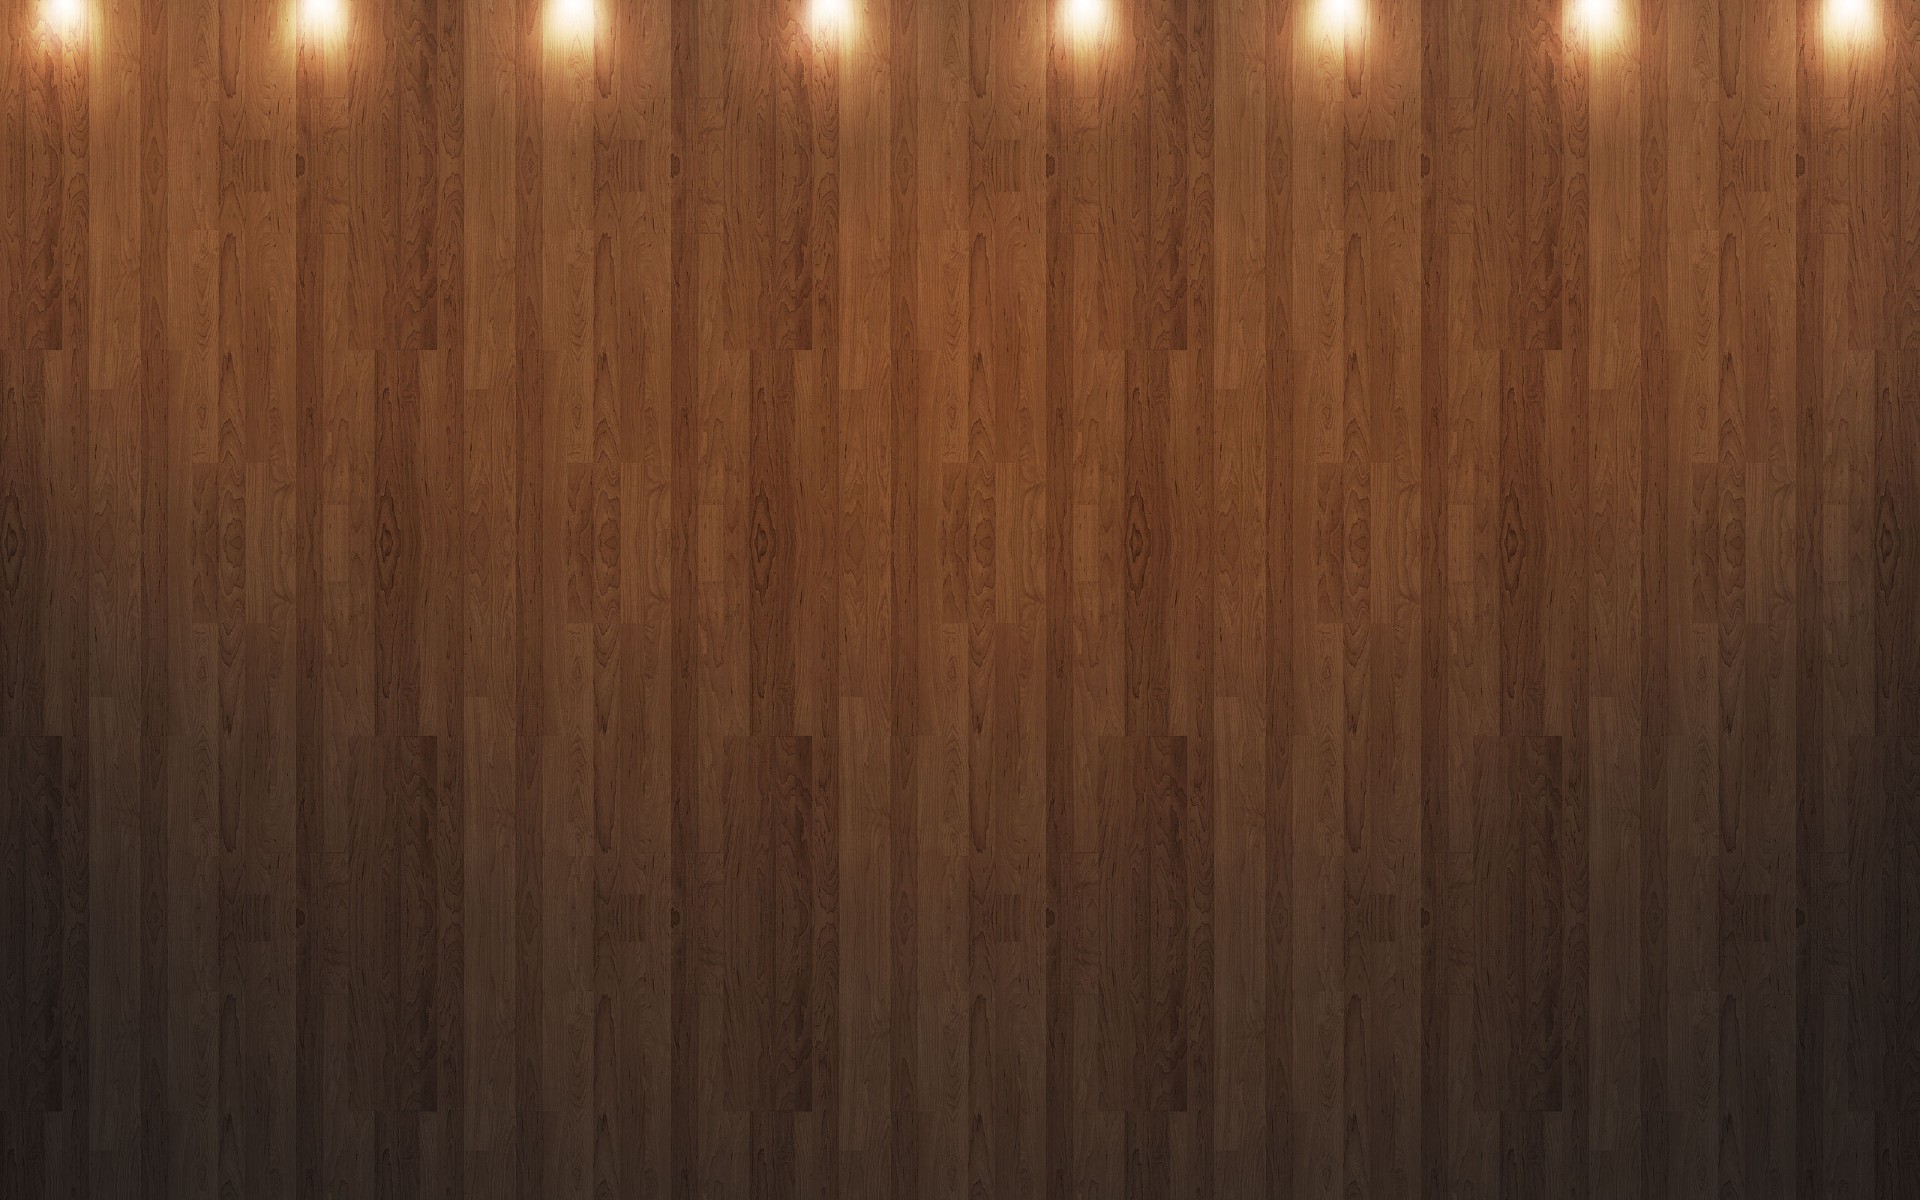 дерево древесины журнал деревянный грубо стены плотницкий ретро мебель паркетный грязные доска старый ткань деревянные темный шаблон поверхность пустые рабочего стола зерна